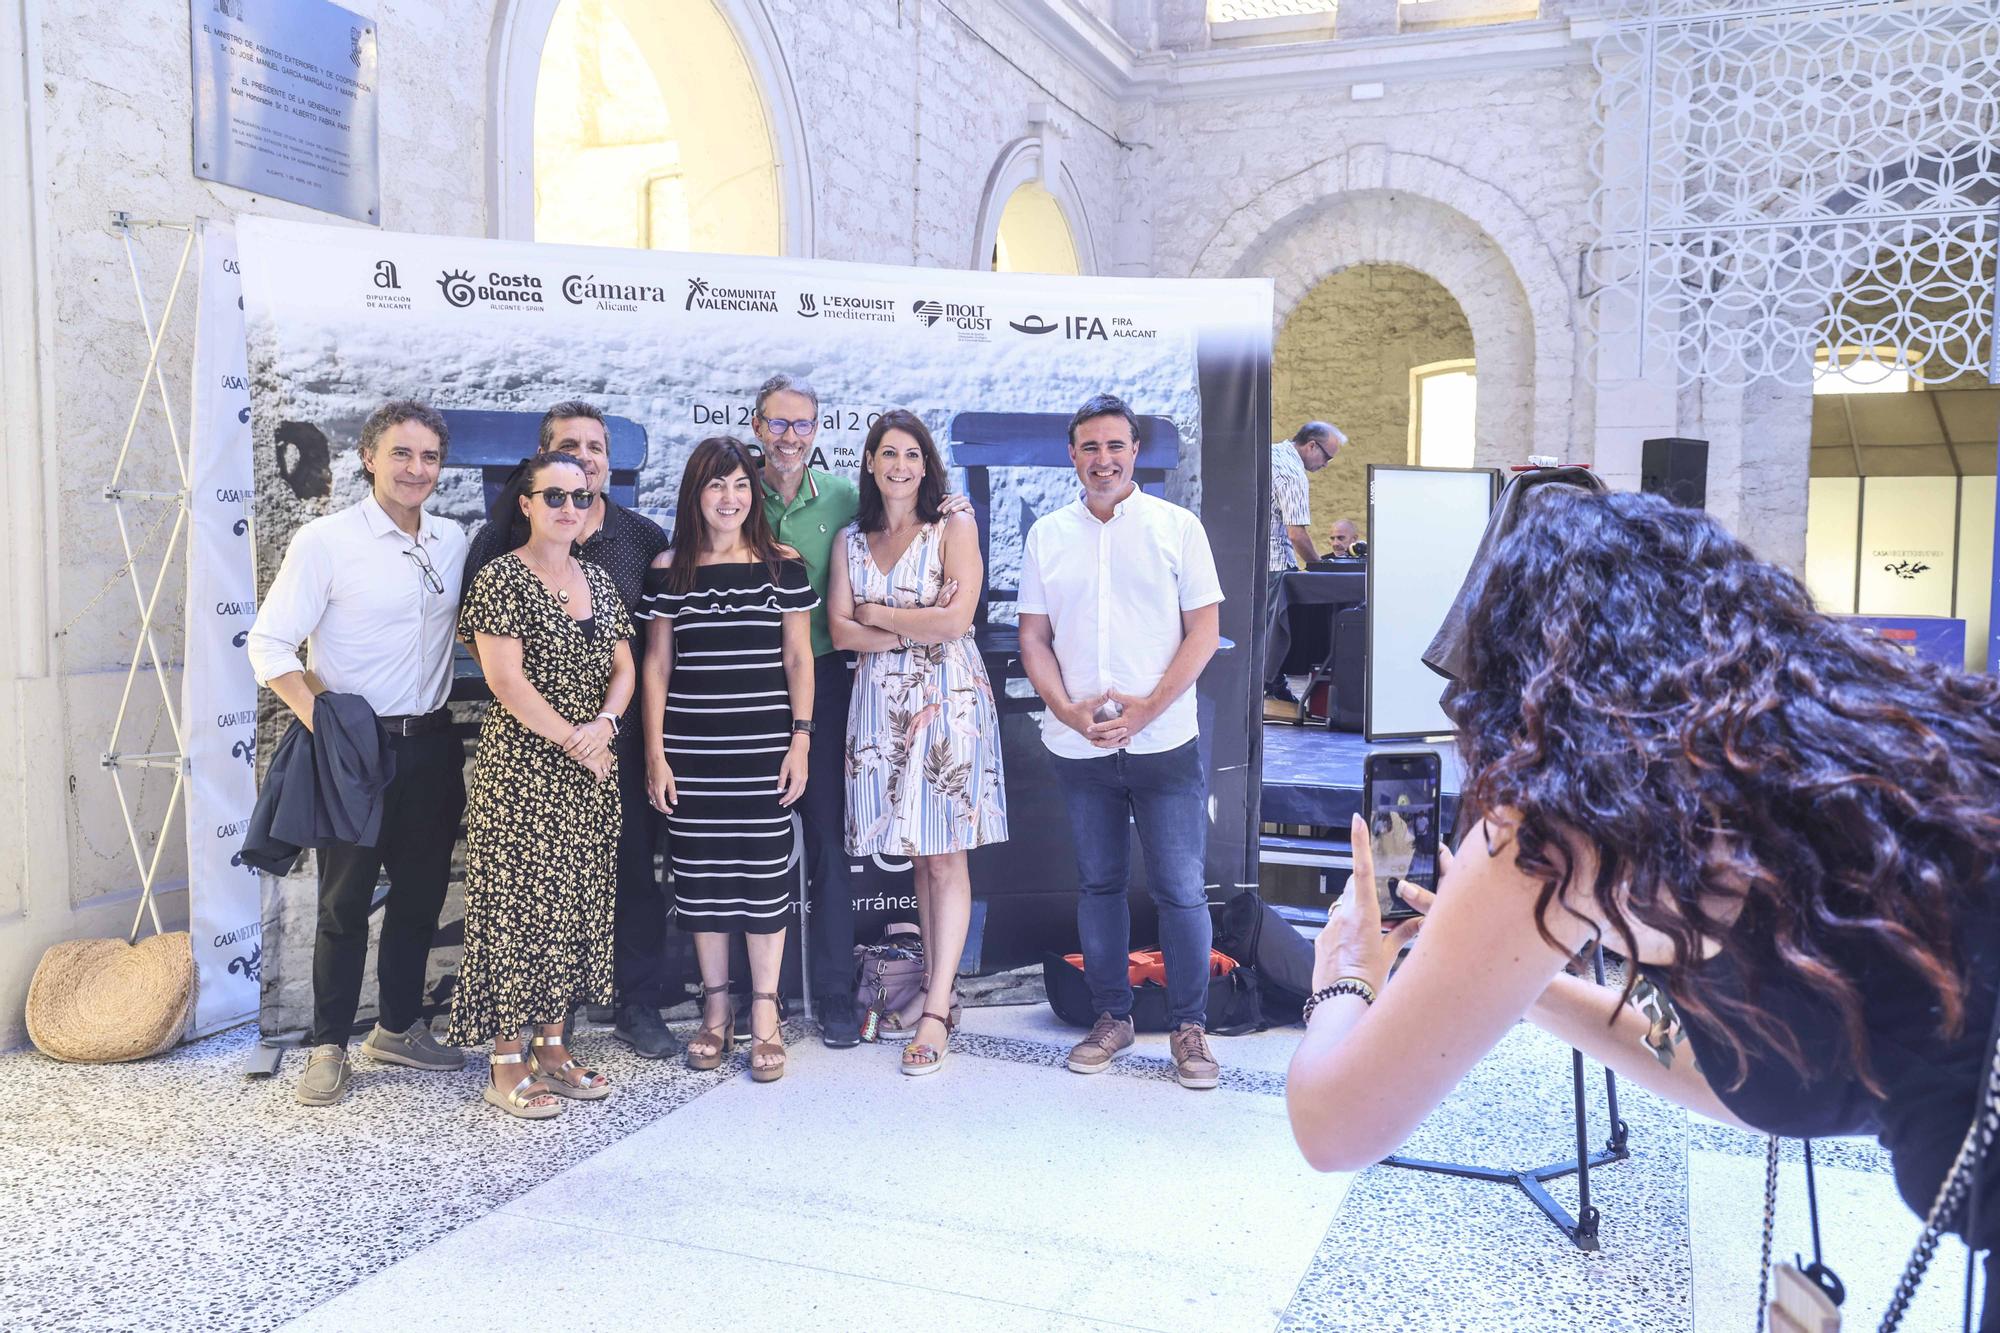 La feria Alicante Gastronómica da el salto internacional en su quinta edición al invitar a Grecia